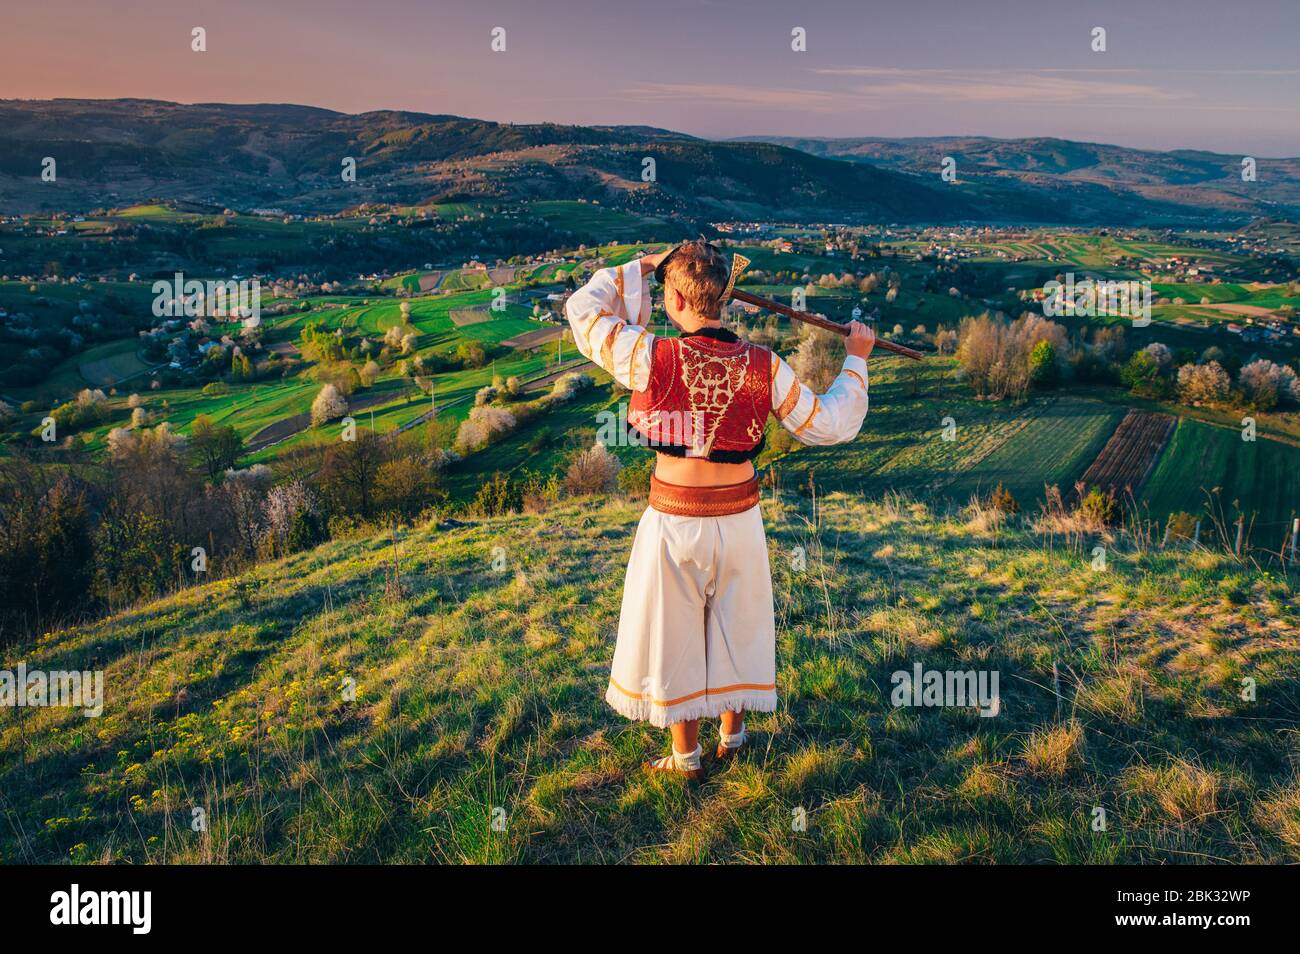 Uomo in tradizionale abito Folk guardando luce alba in bello caldo paesaggio primaverile. Prato rurale e fiori primaverili alberi di ciliegio sullo sfondo Foto Stock